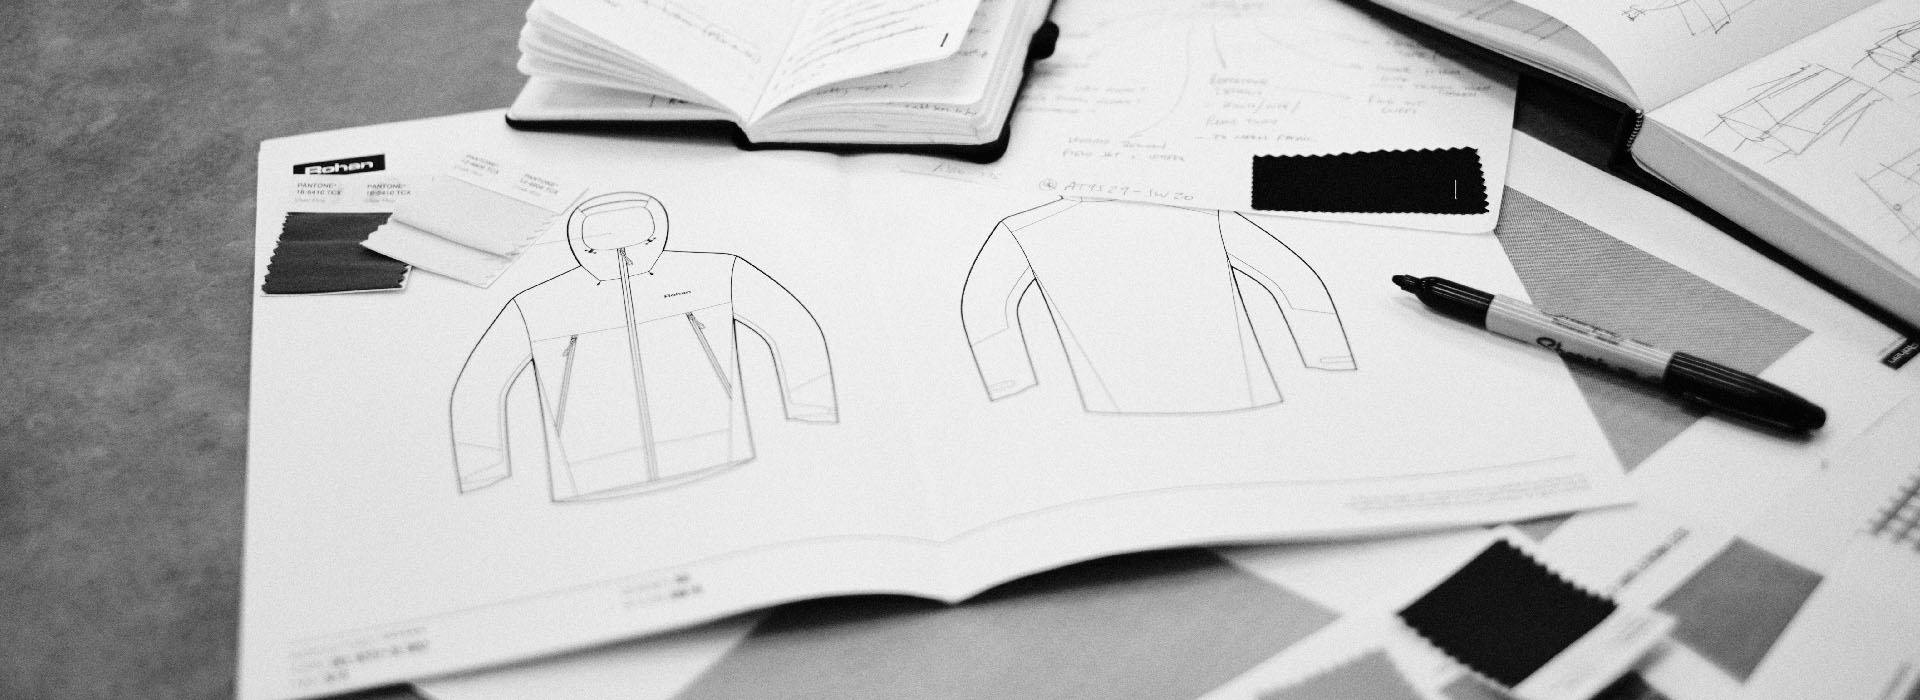 diagrams of jacket designs